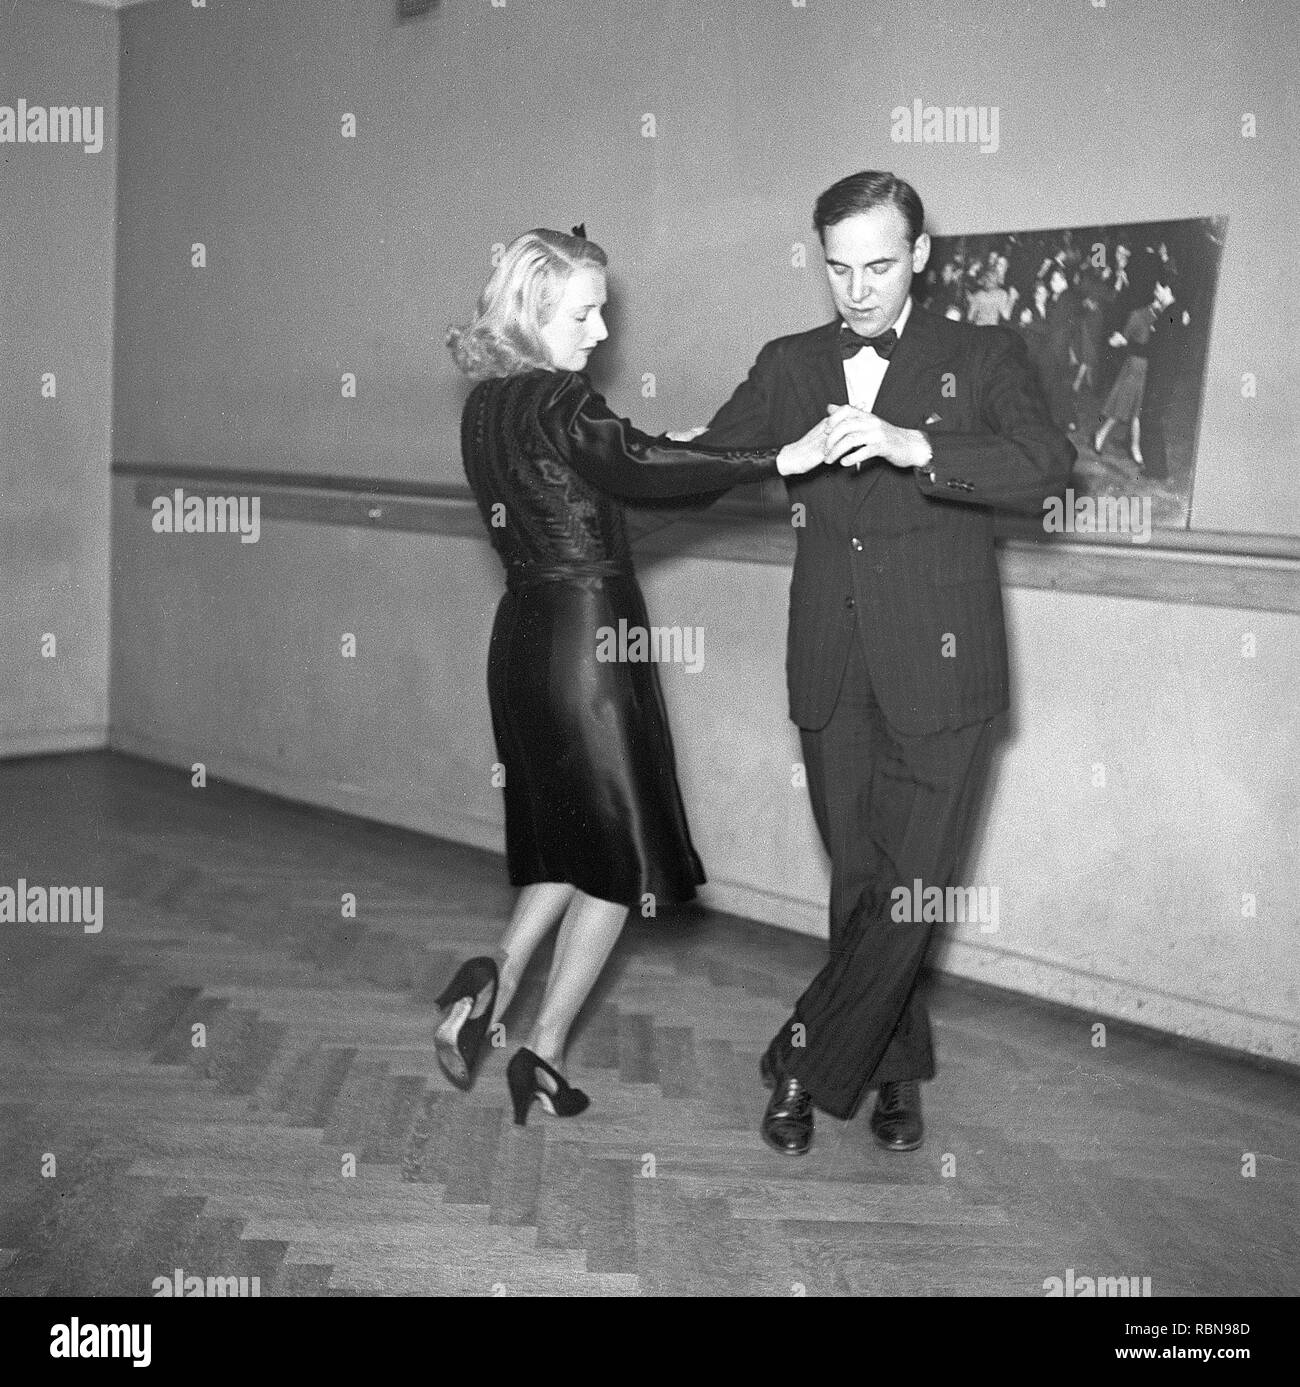 Tanz in den 1940er Jahren. Ein Tanzpaar in den 1940er Jahren. Die elegante Paar sind Ausbildung ihren Tanzschritten an einem Tanz Schule. Foto Kristoffersson Ref B3-1. Schweden 1943 Stockfoto